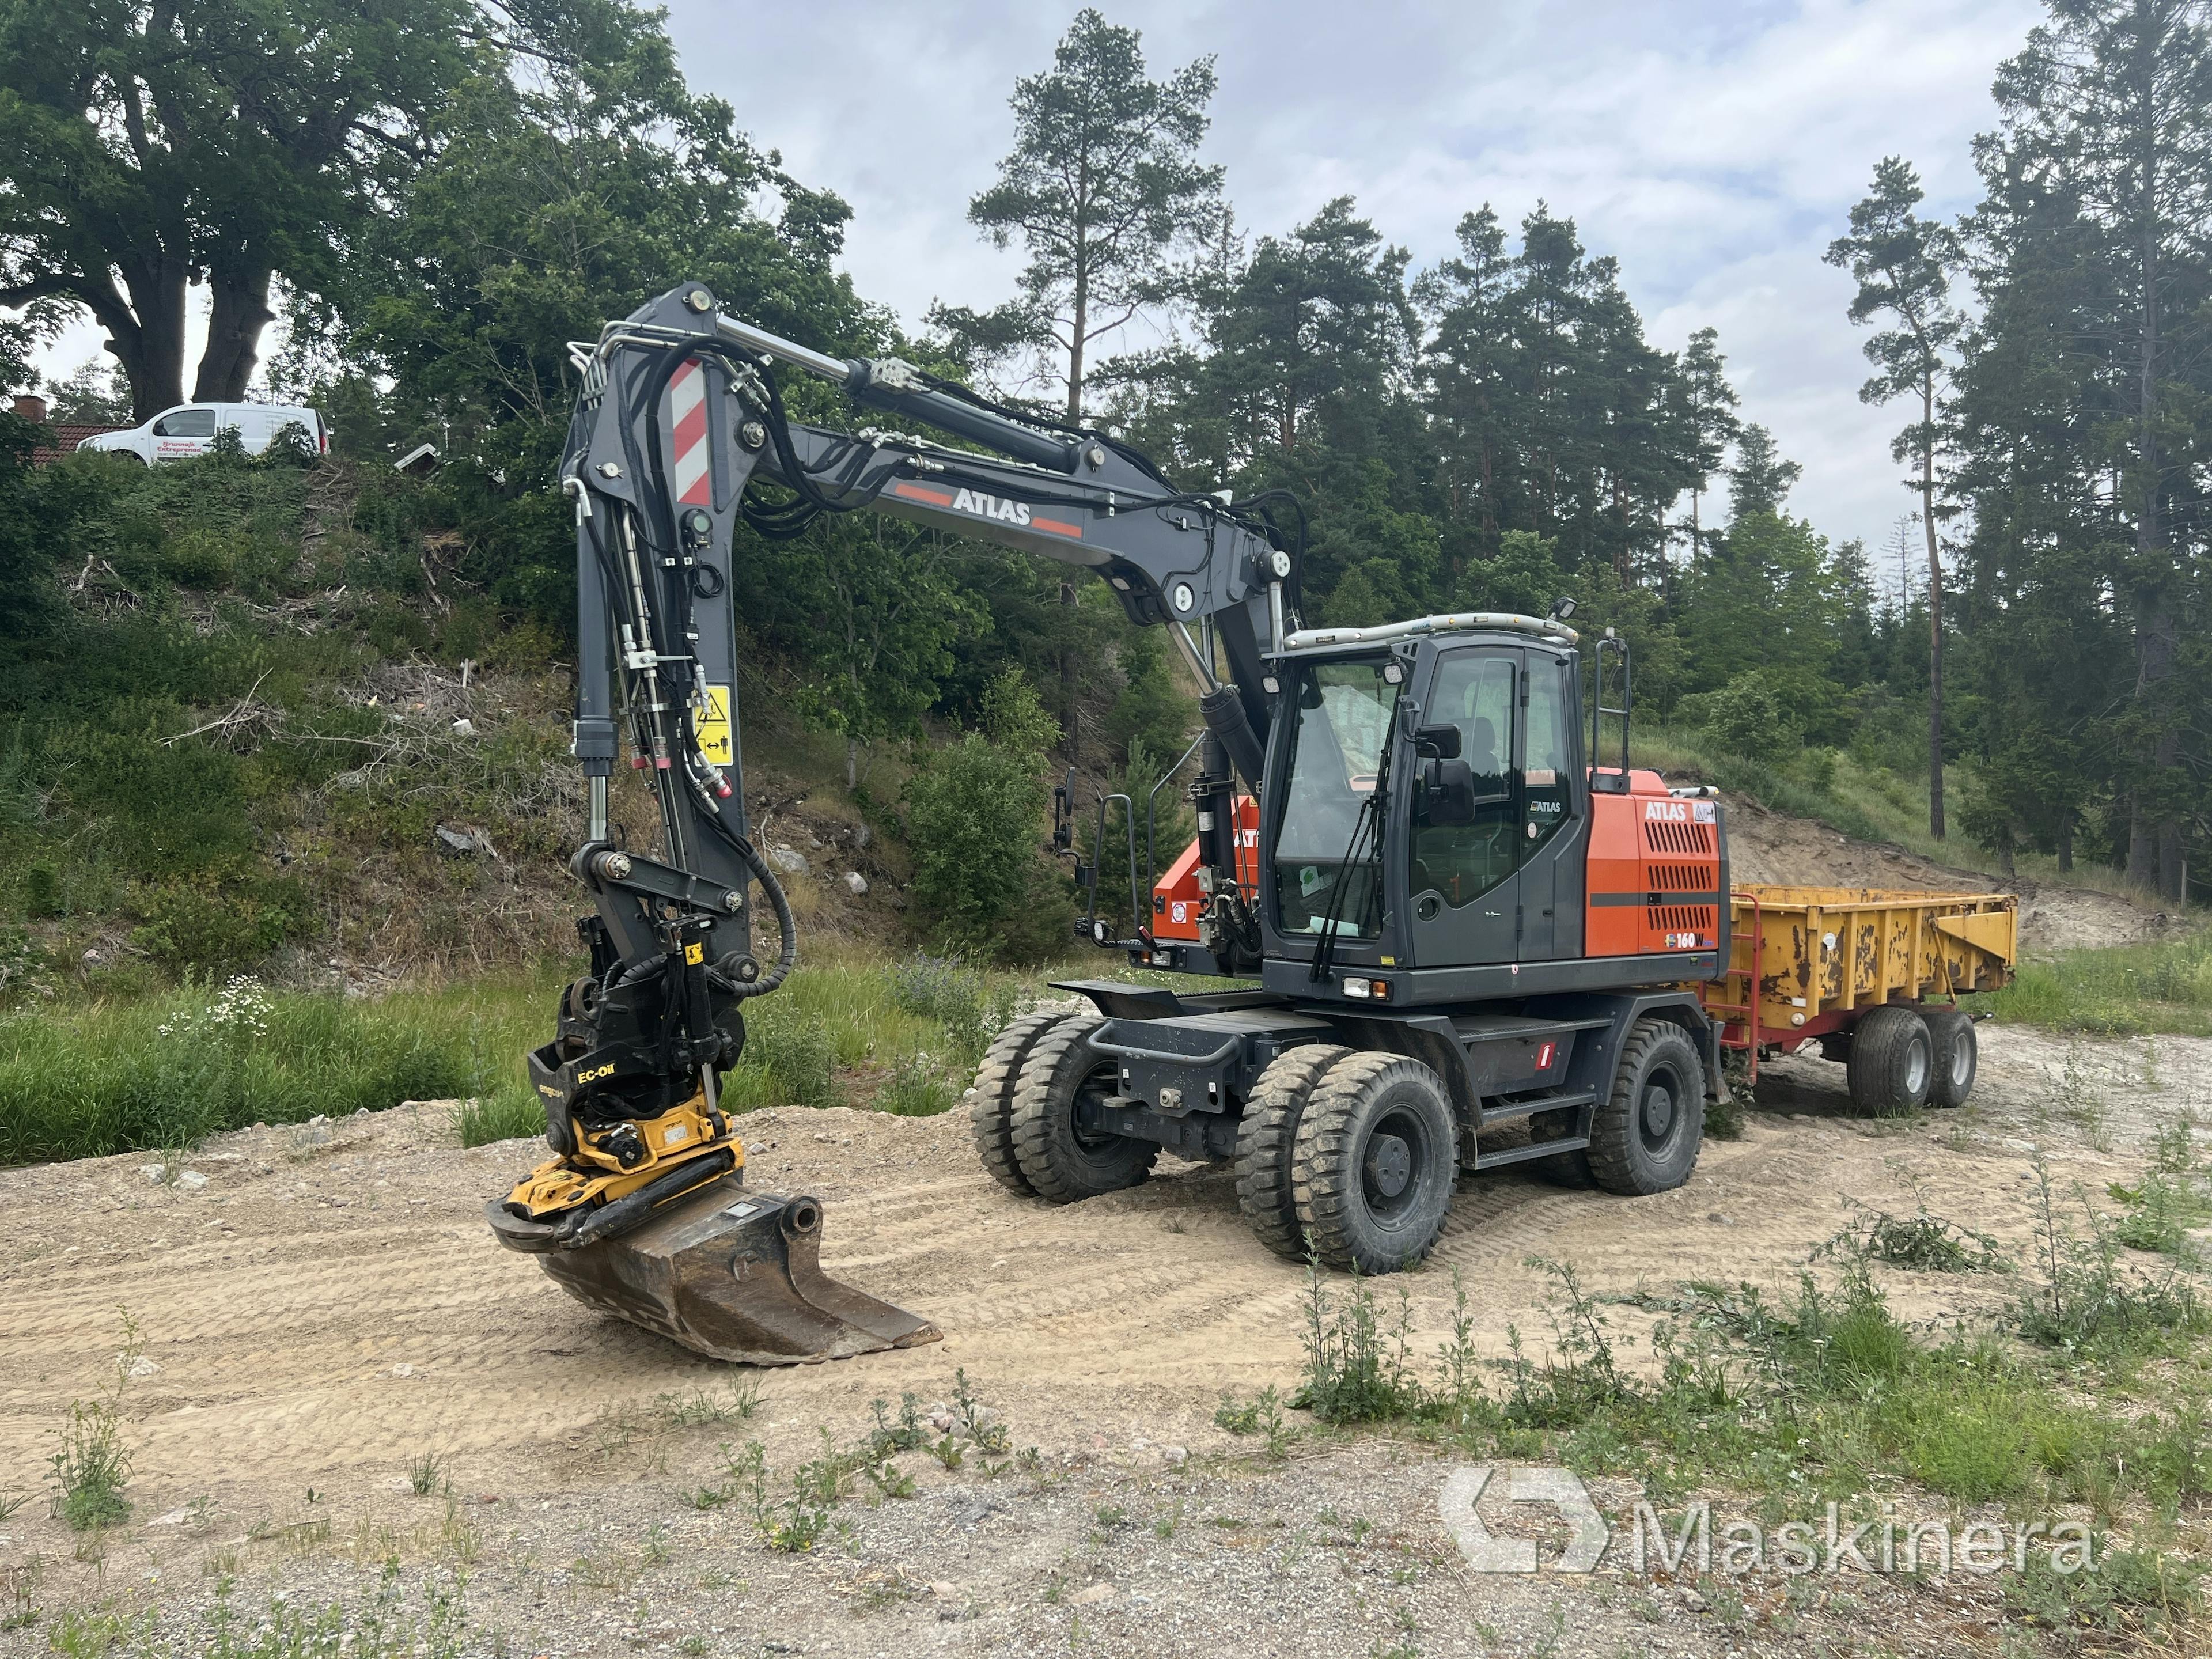 Hjulgrävare Atlas 160 W med grävsystem, dumpervagn & skoppaket